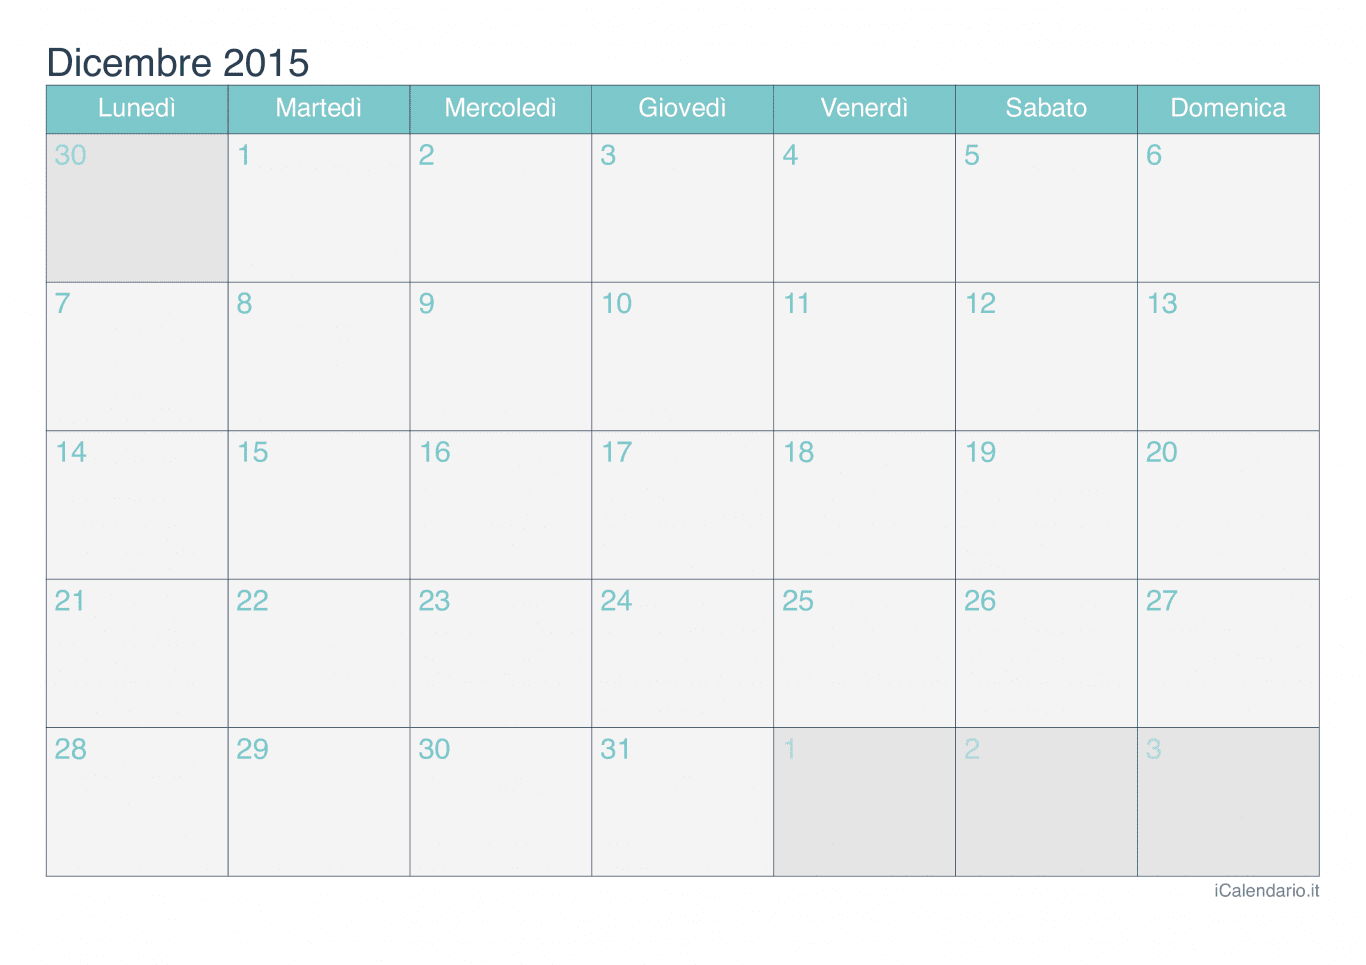 Calendario di dicembre 2015 - Turchese